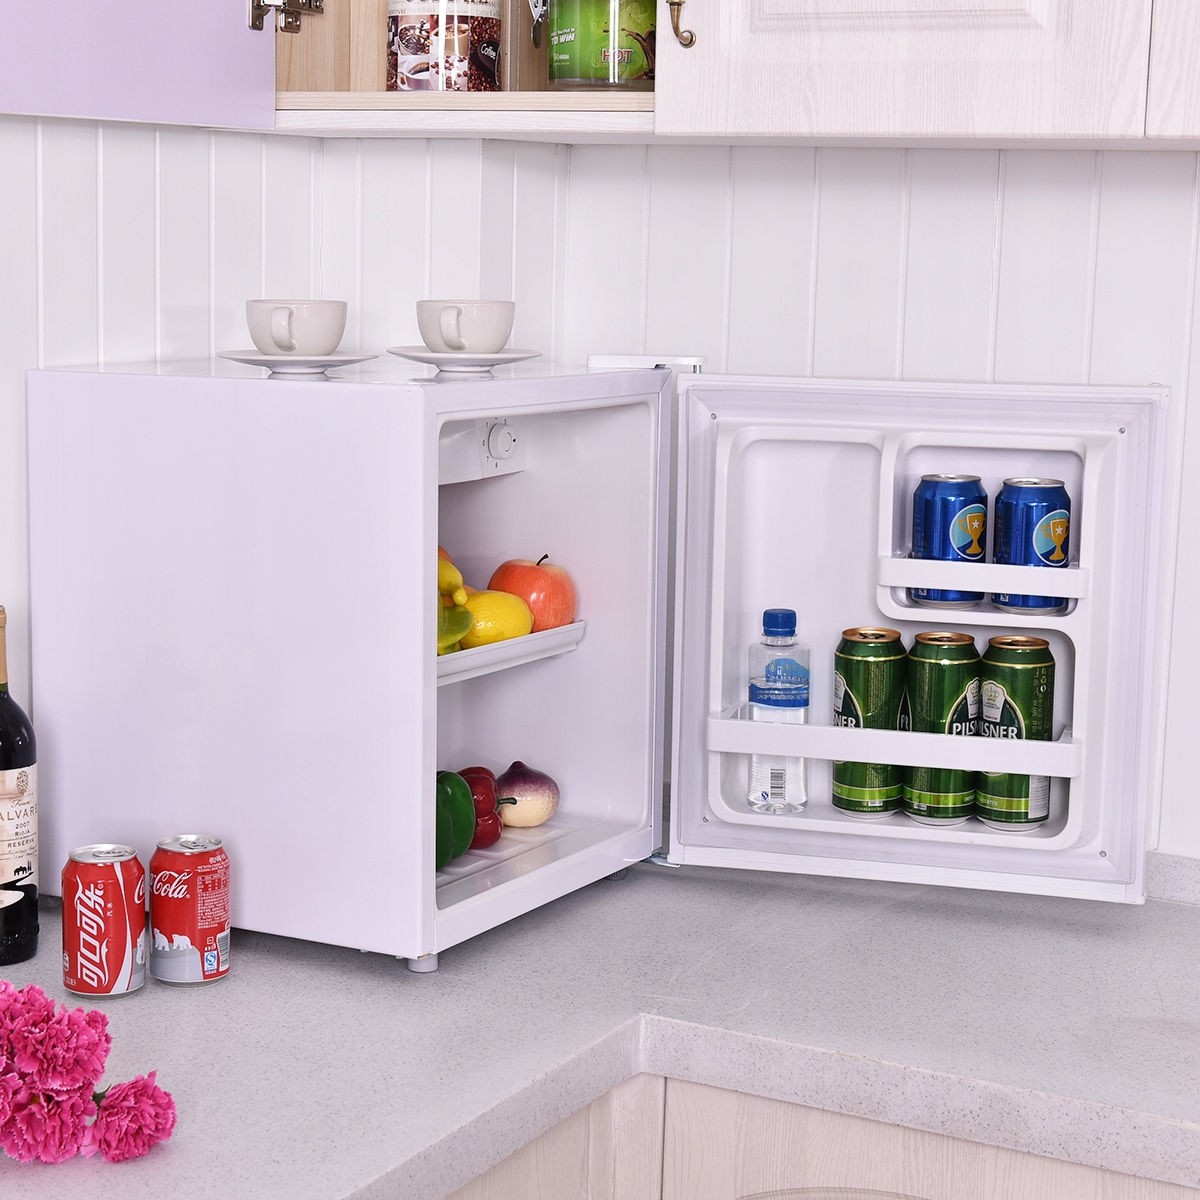 Купить маленький холодильник с морозильной камерой. Мини холодильник ДНС мини холодильник. Мини холодильник Шиваки с морозильной камерой. SHRF-74ch. Shivaki SHRF-74ch морозильник.